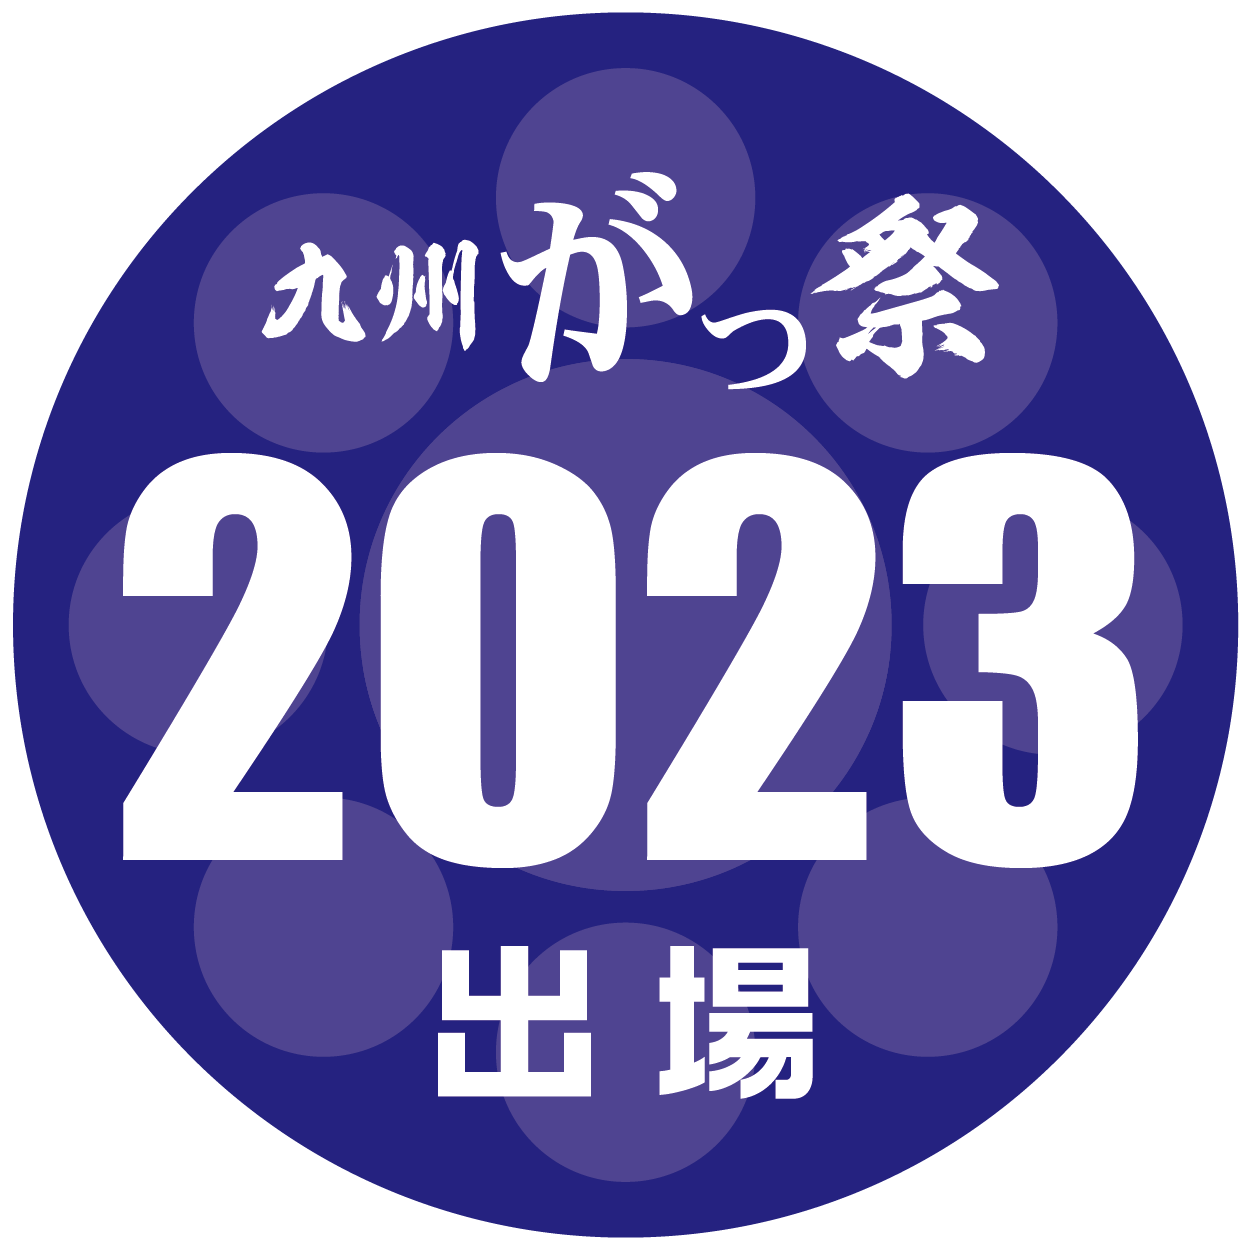 2023出場ロゴ